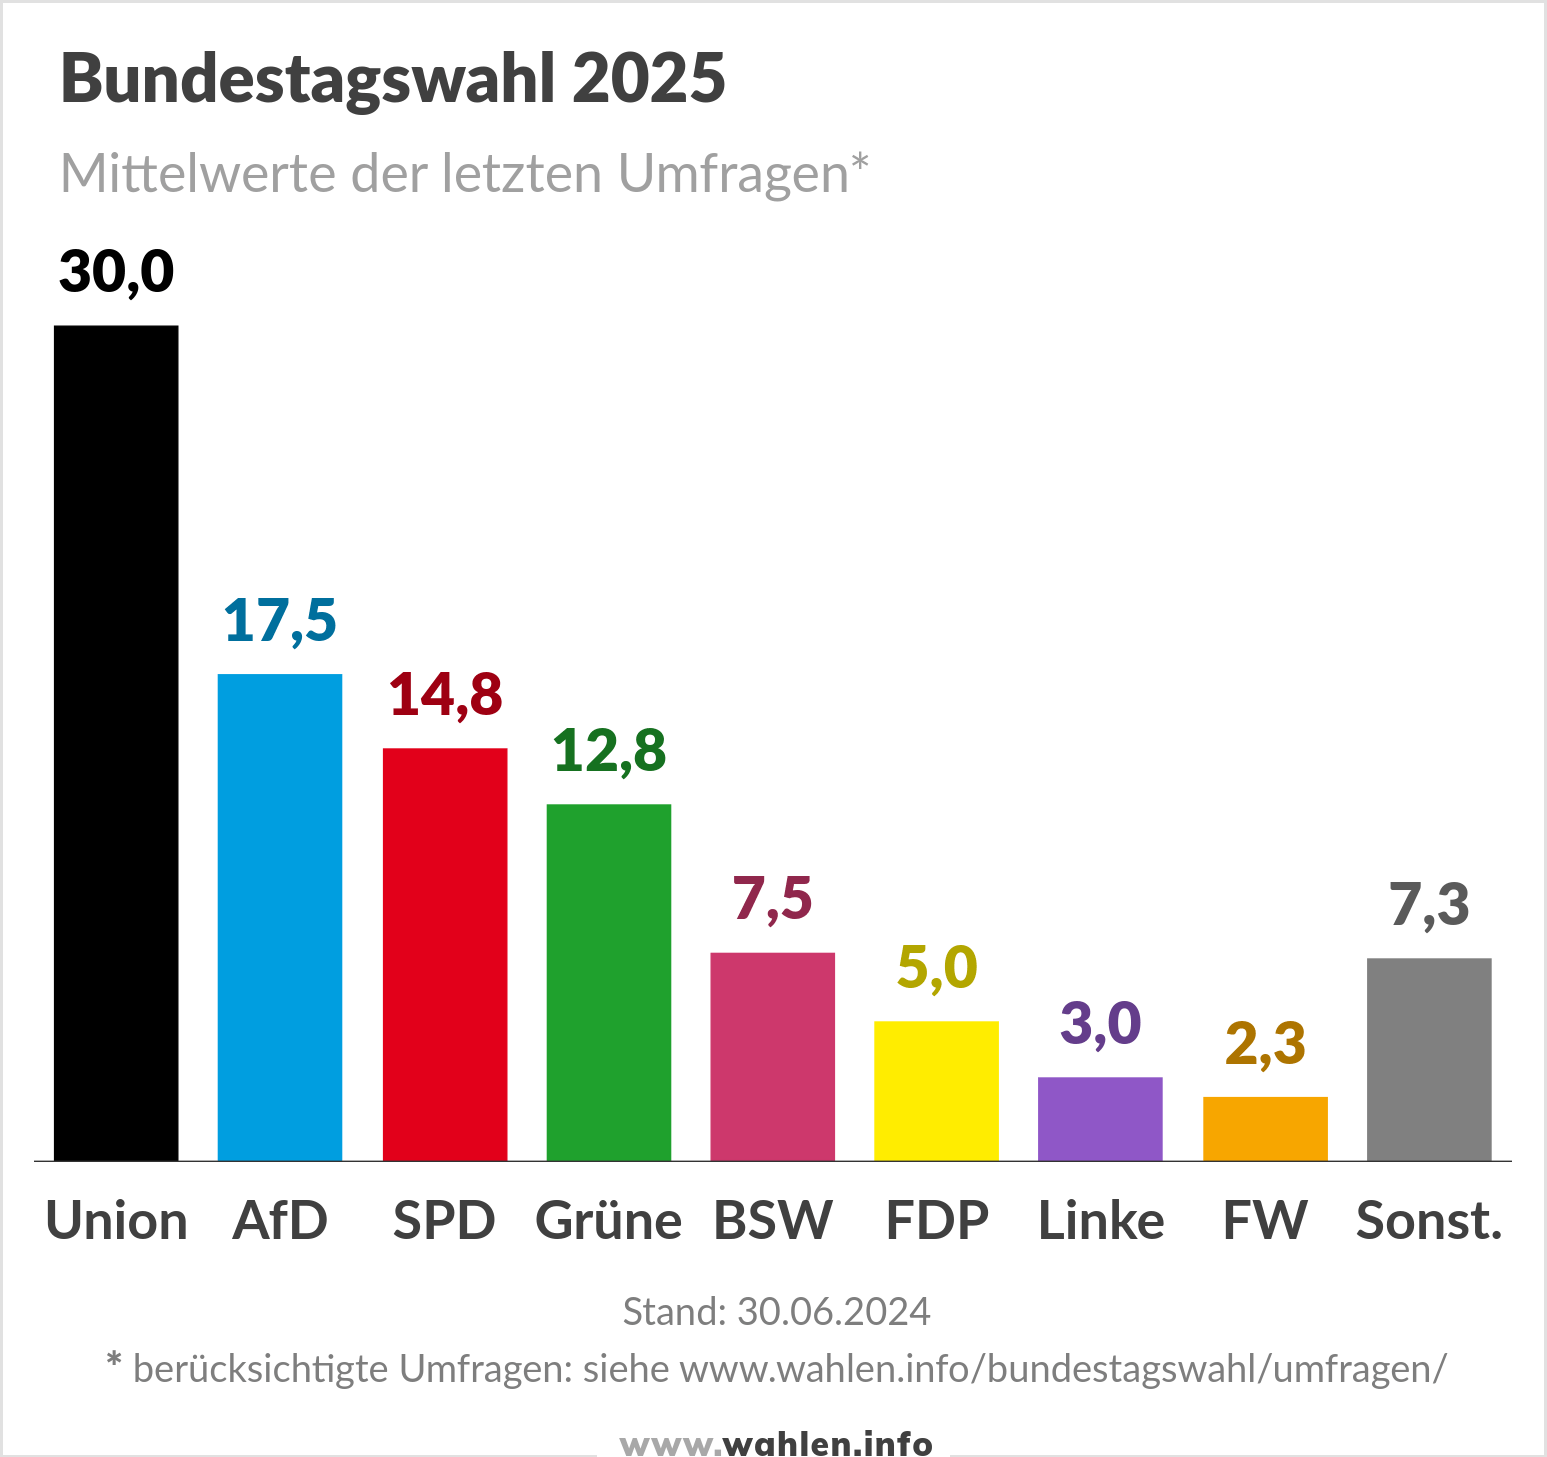 Bundestagswahl 2025, Umfragen mit FW und BSW